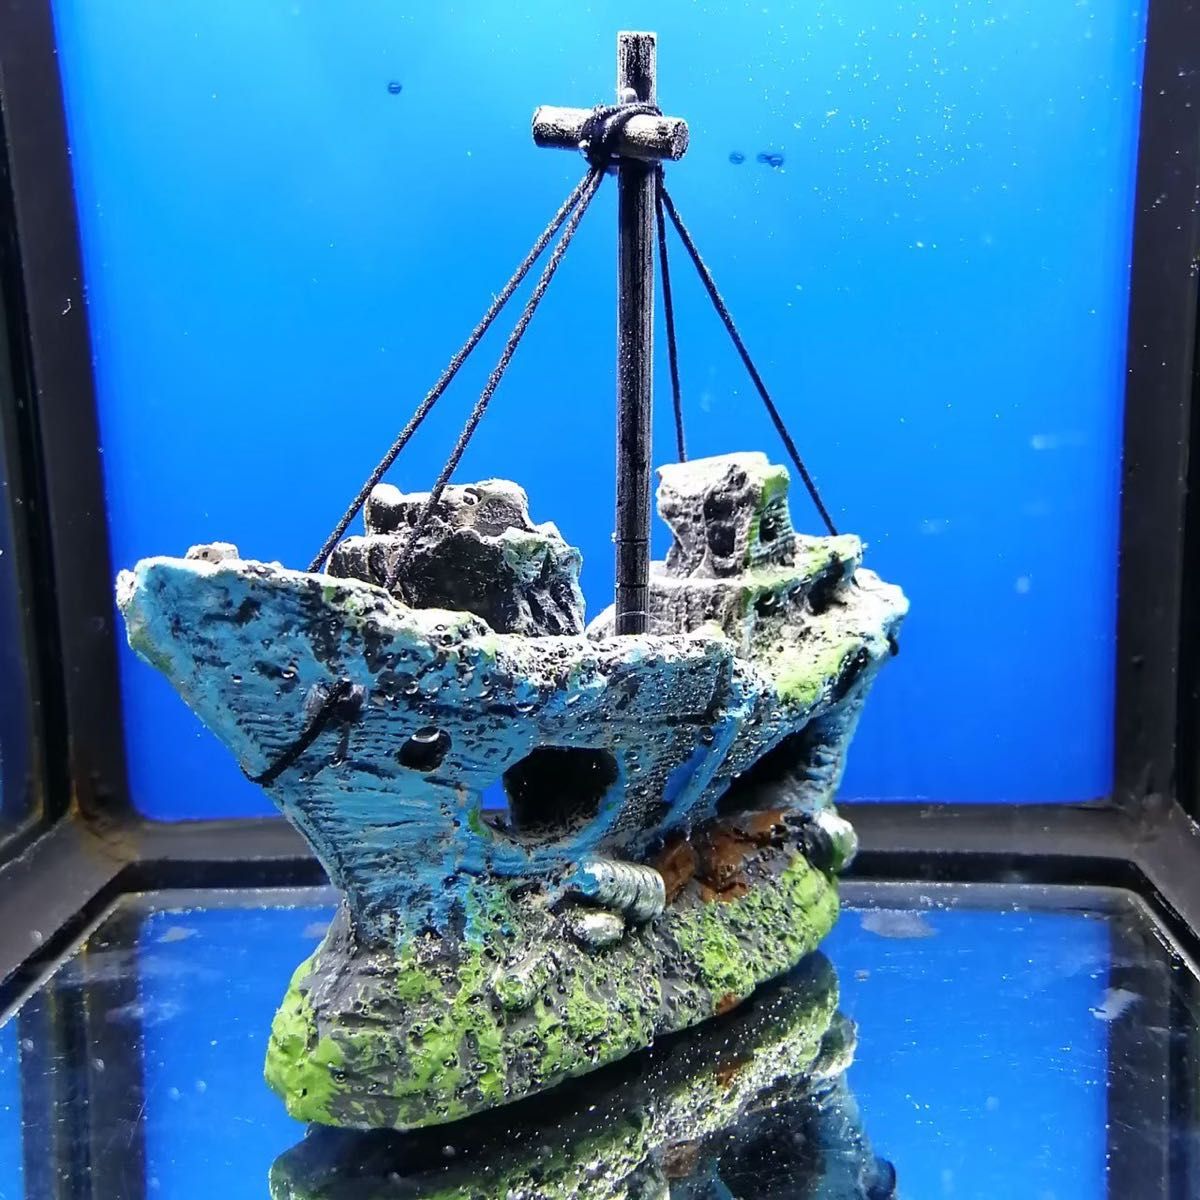 沈没船 水槽 アクアリウム オブジェ 遺跡 オーナメント 飾り 模型 熱帯魚 海水魚 メダカ グッピー ミナミヌマエビ レイアウト